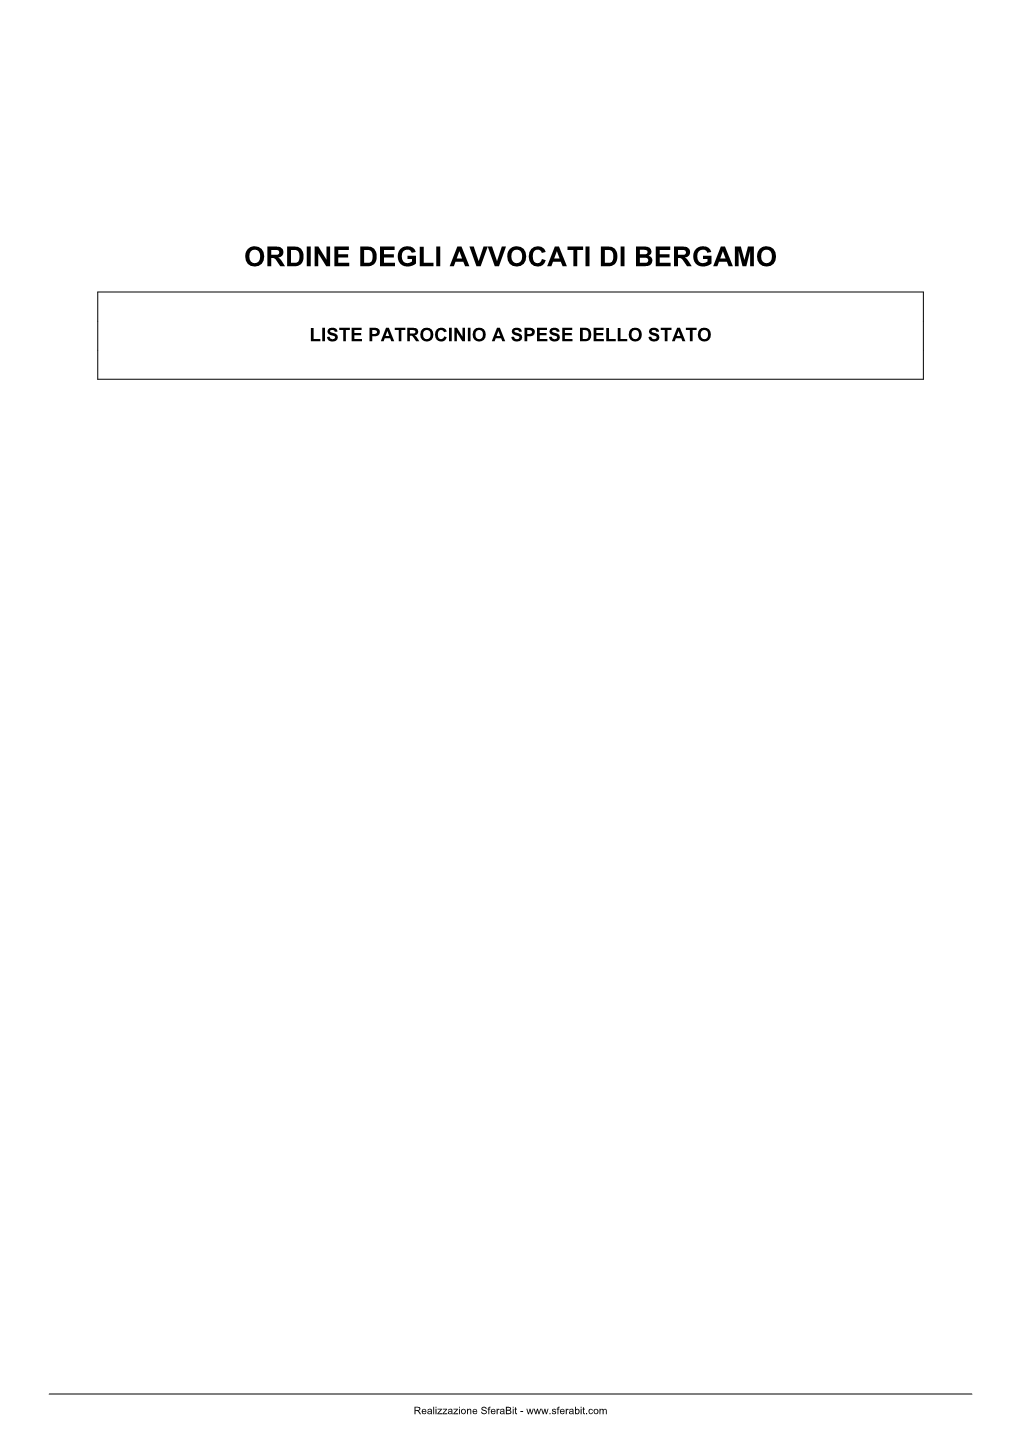 Ordine Degli Avvocati Di Bergamo